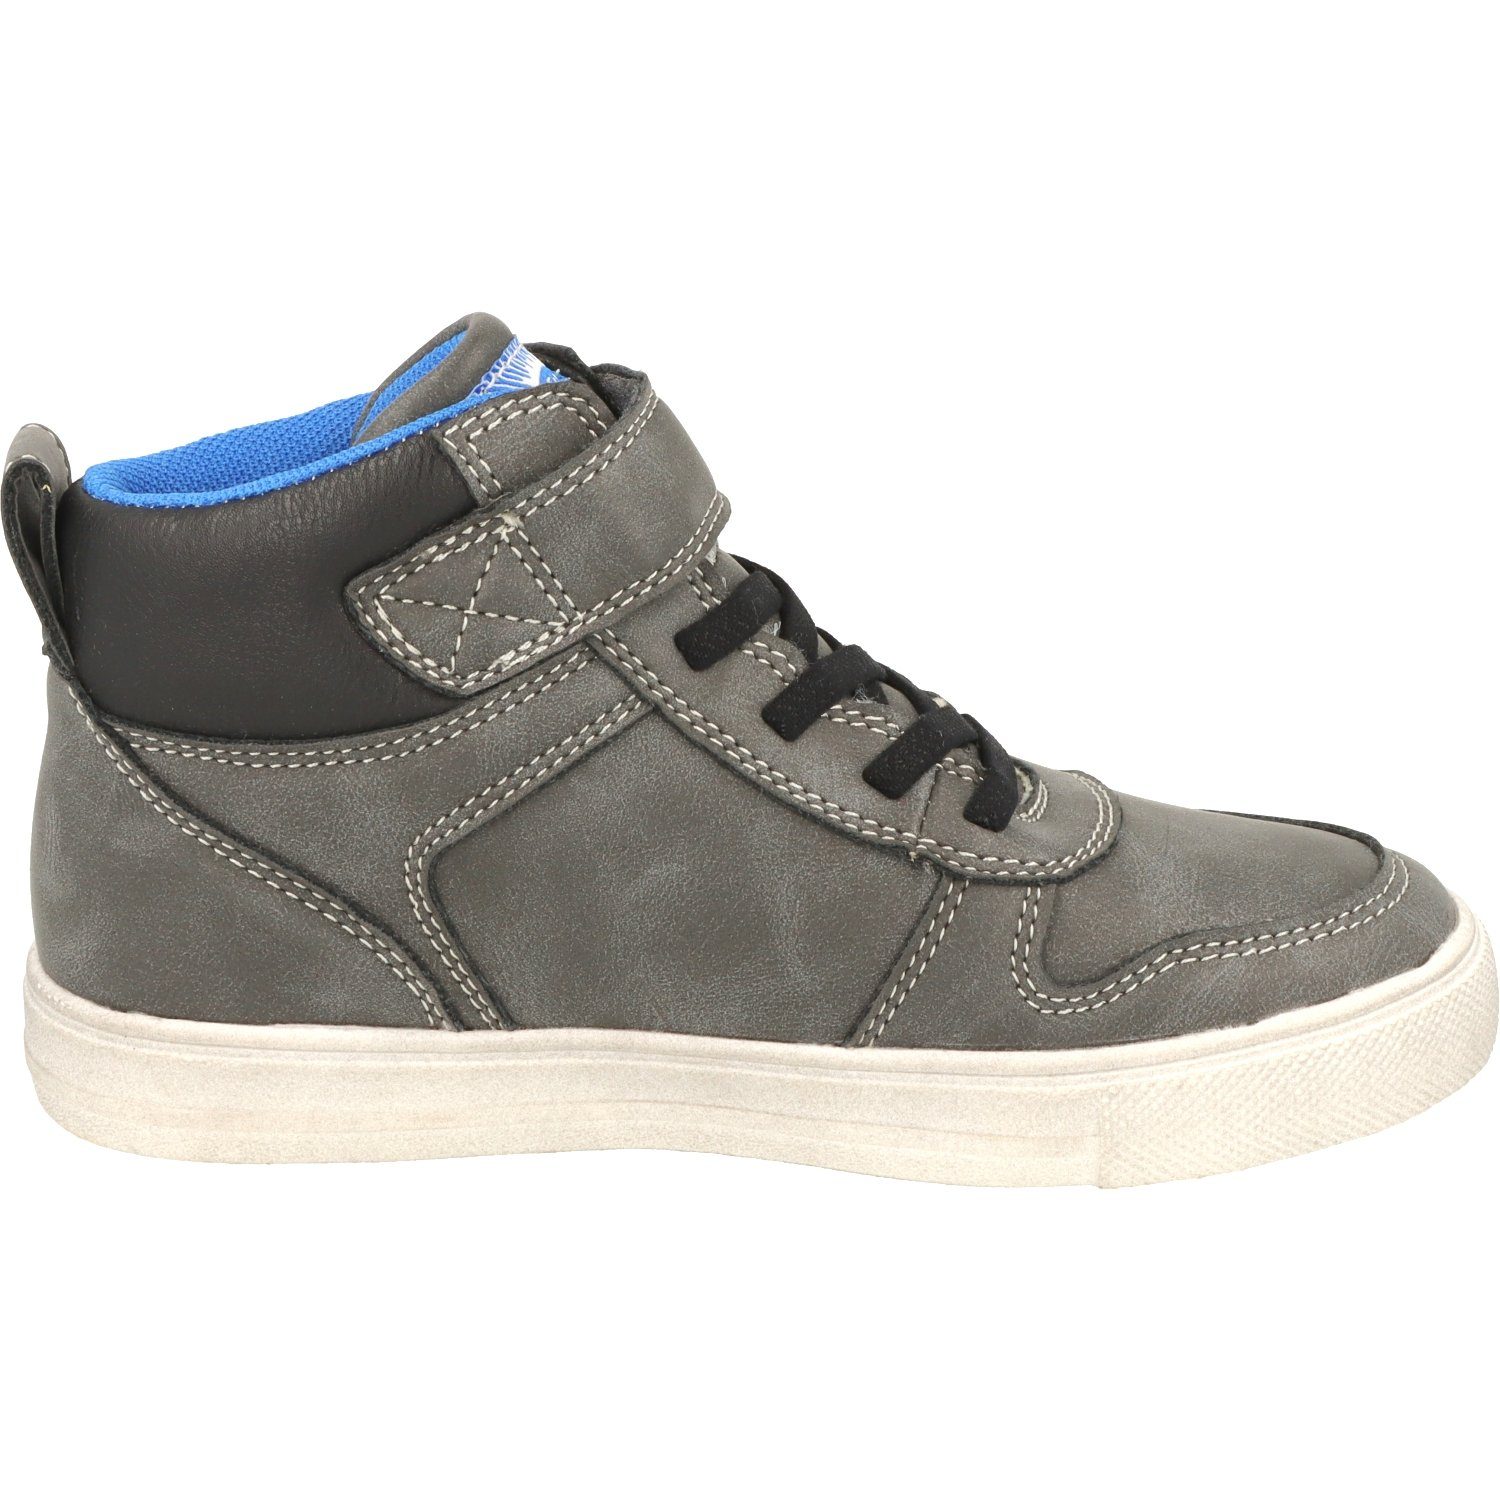 Indigo Jungen Schuhe 451-074 Schnürschuhe Dk.Grey Wasserabweisend Sneaker Hi-Top